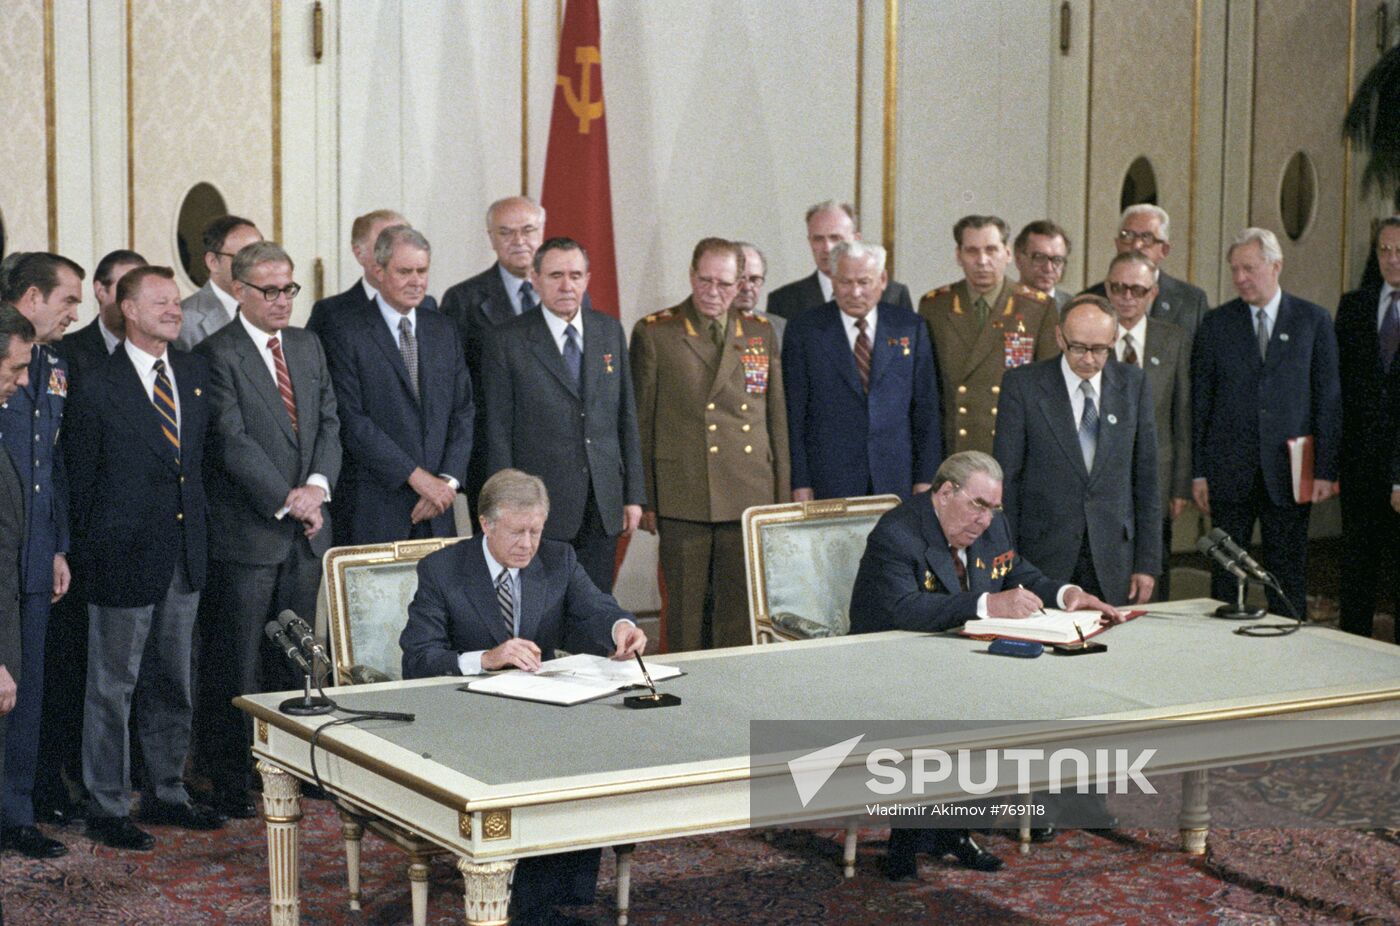 Leonid Brezhnev, Jimmy Carter signing documents